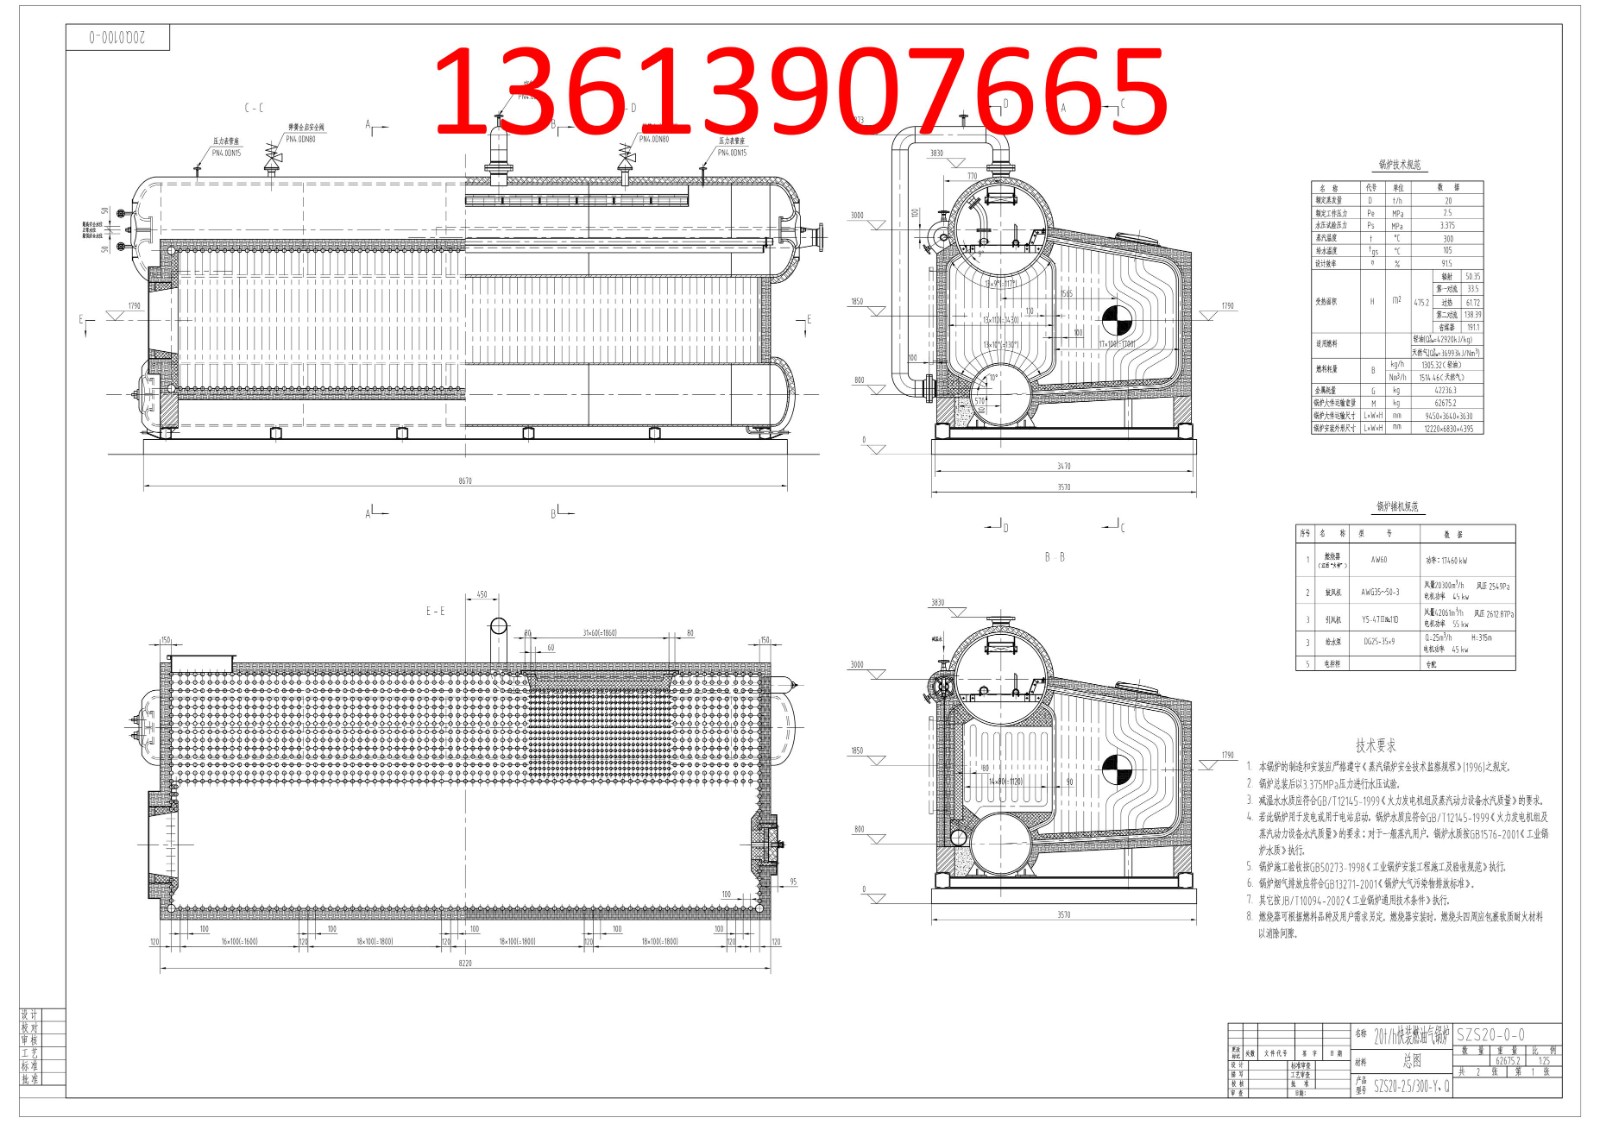 SZS20-2.5/300-Y(Q)蒸汽锅炉图纸下载及介绍